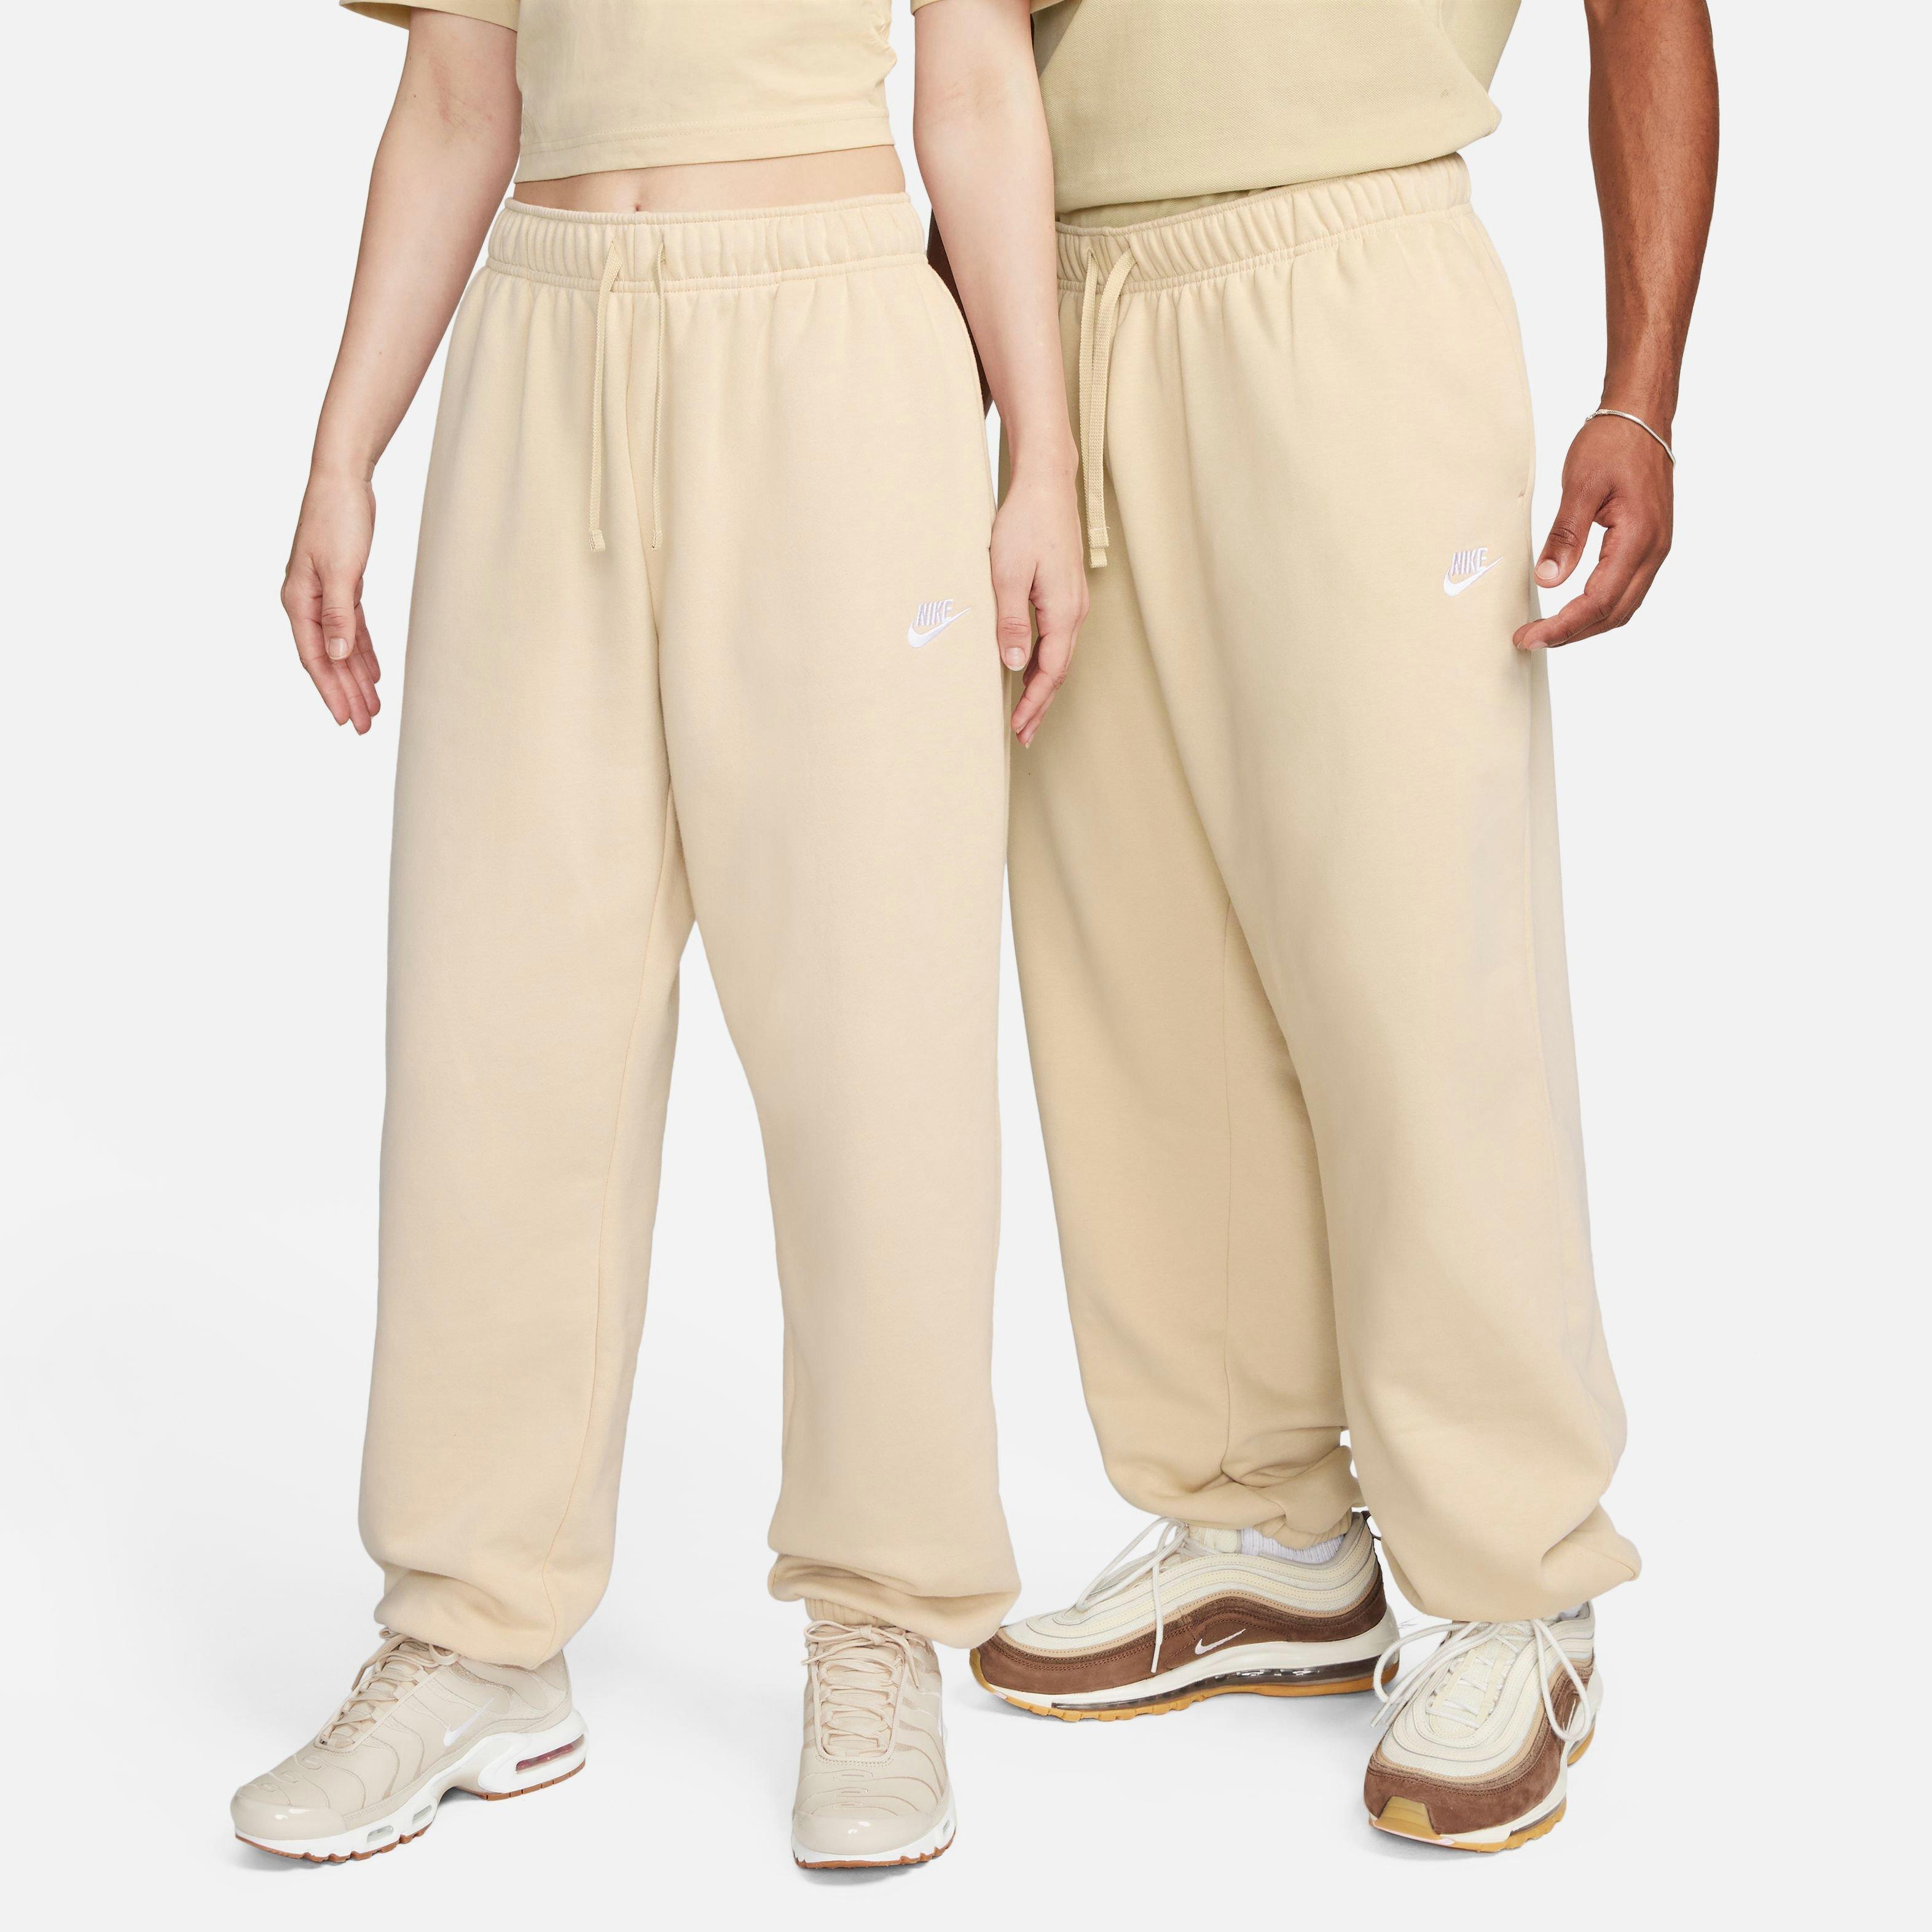 Nike Women's Sportswear Club Fleece Mid-Rise Pants-Black/White - Hibbett